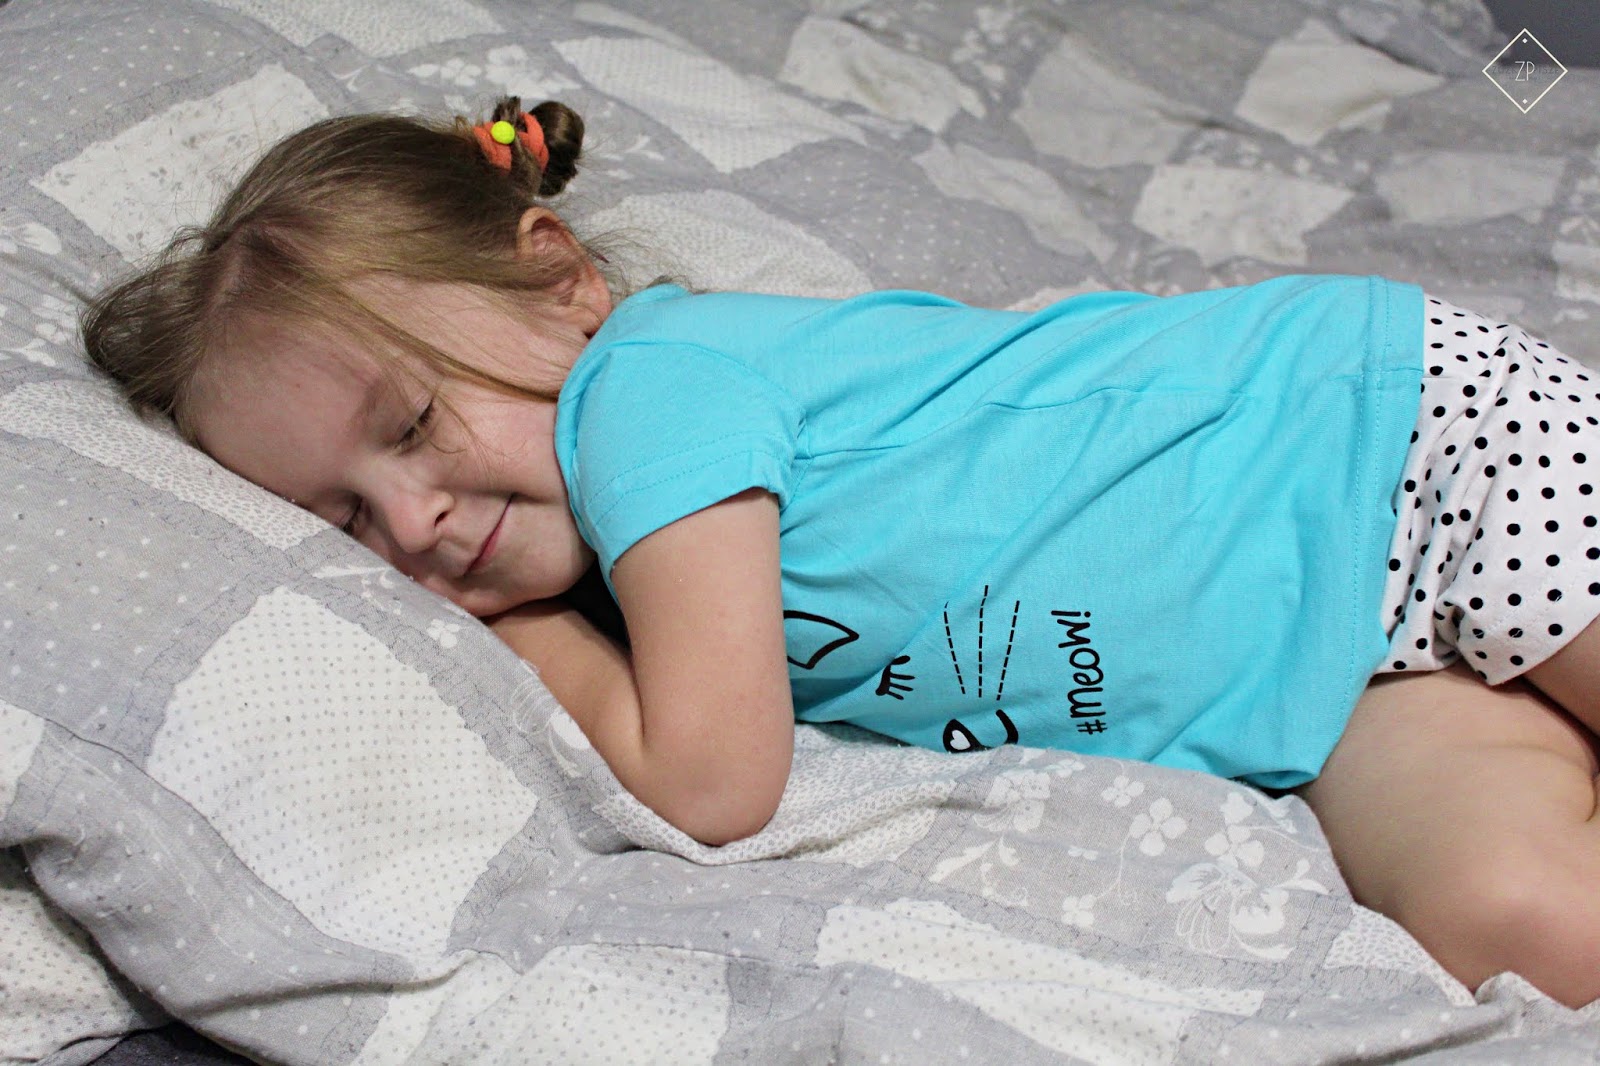 Słodkich snów - piżama z krótkimi spodenkami z bawełny organicznej BONPRIX | Zuzka Pisze